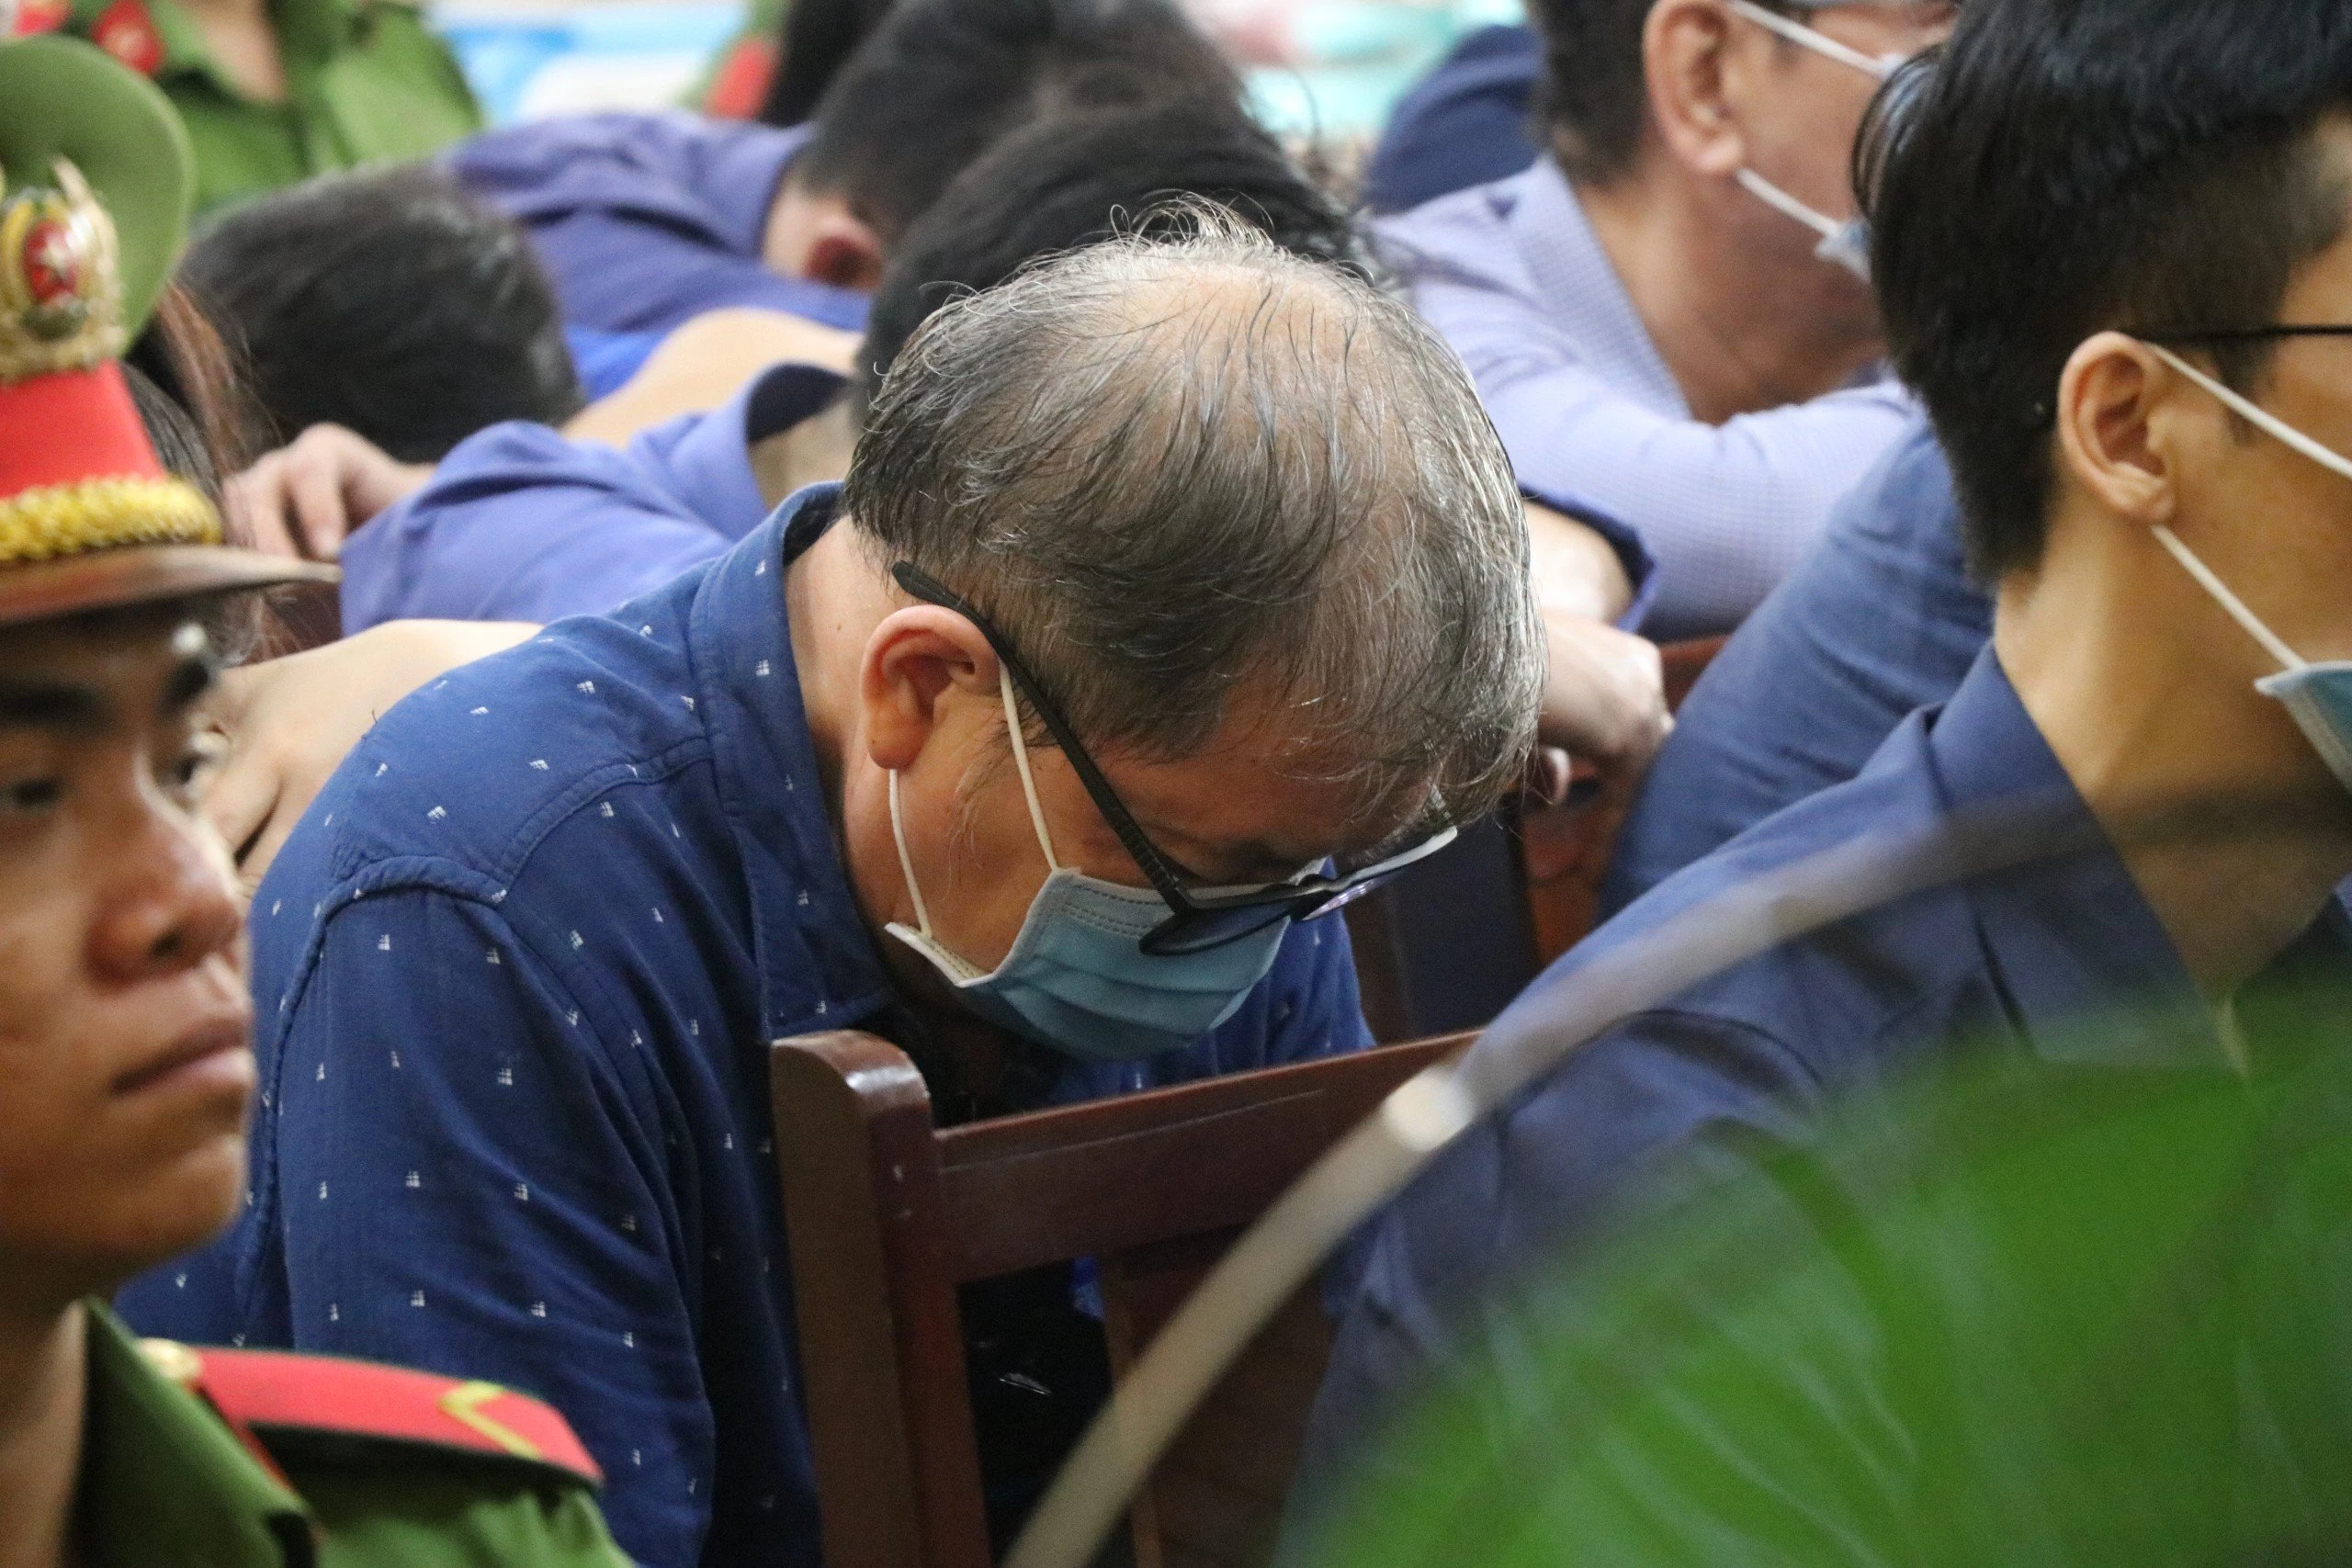 CEO Tập đoàn của tỉ phú Lý Gia Thành gửi văn bản đến tòa xét xử Trương Mỹ Lan